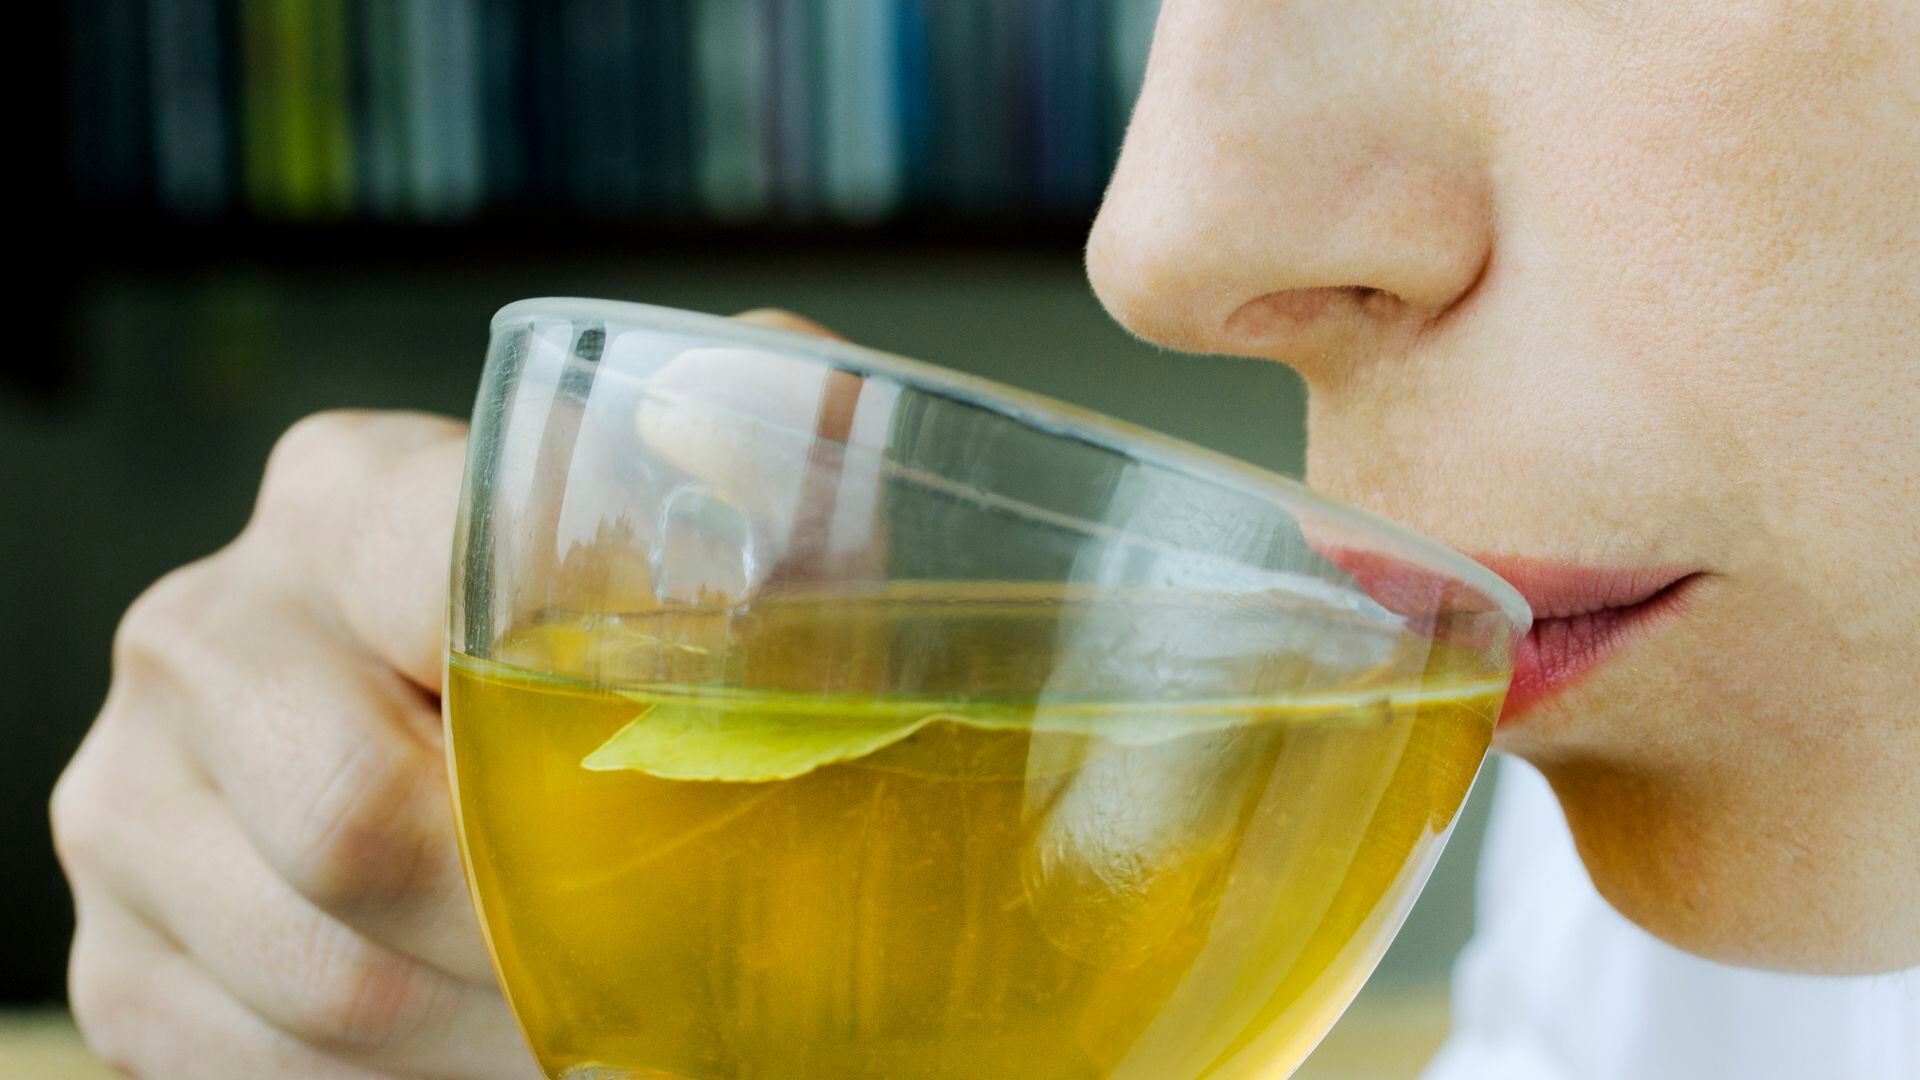 Los ensayos clínicos muestran que el consumo regular de té, especialmente el té verde, puede mejorar ligeramente la presión arterial y el colesterol (Getty Images)